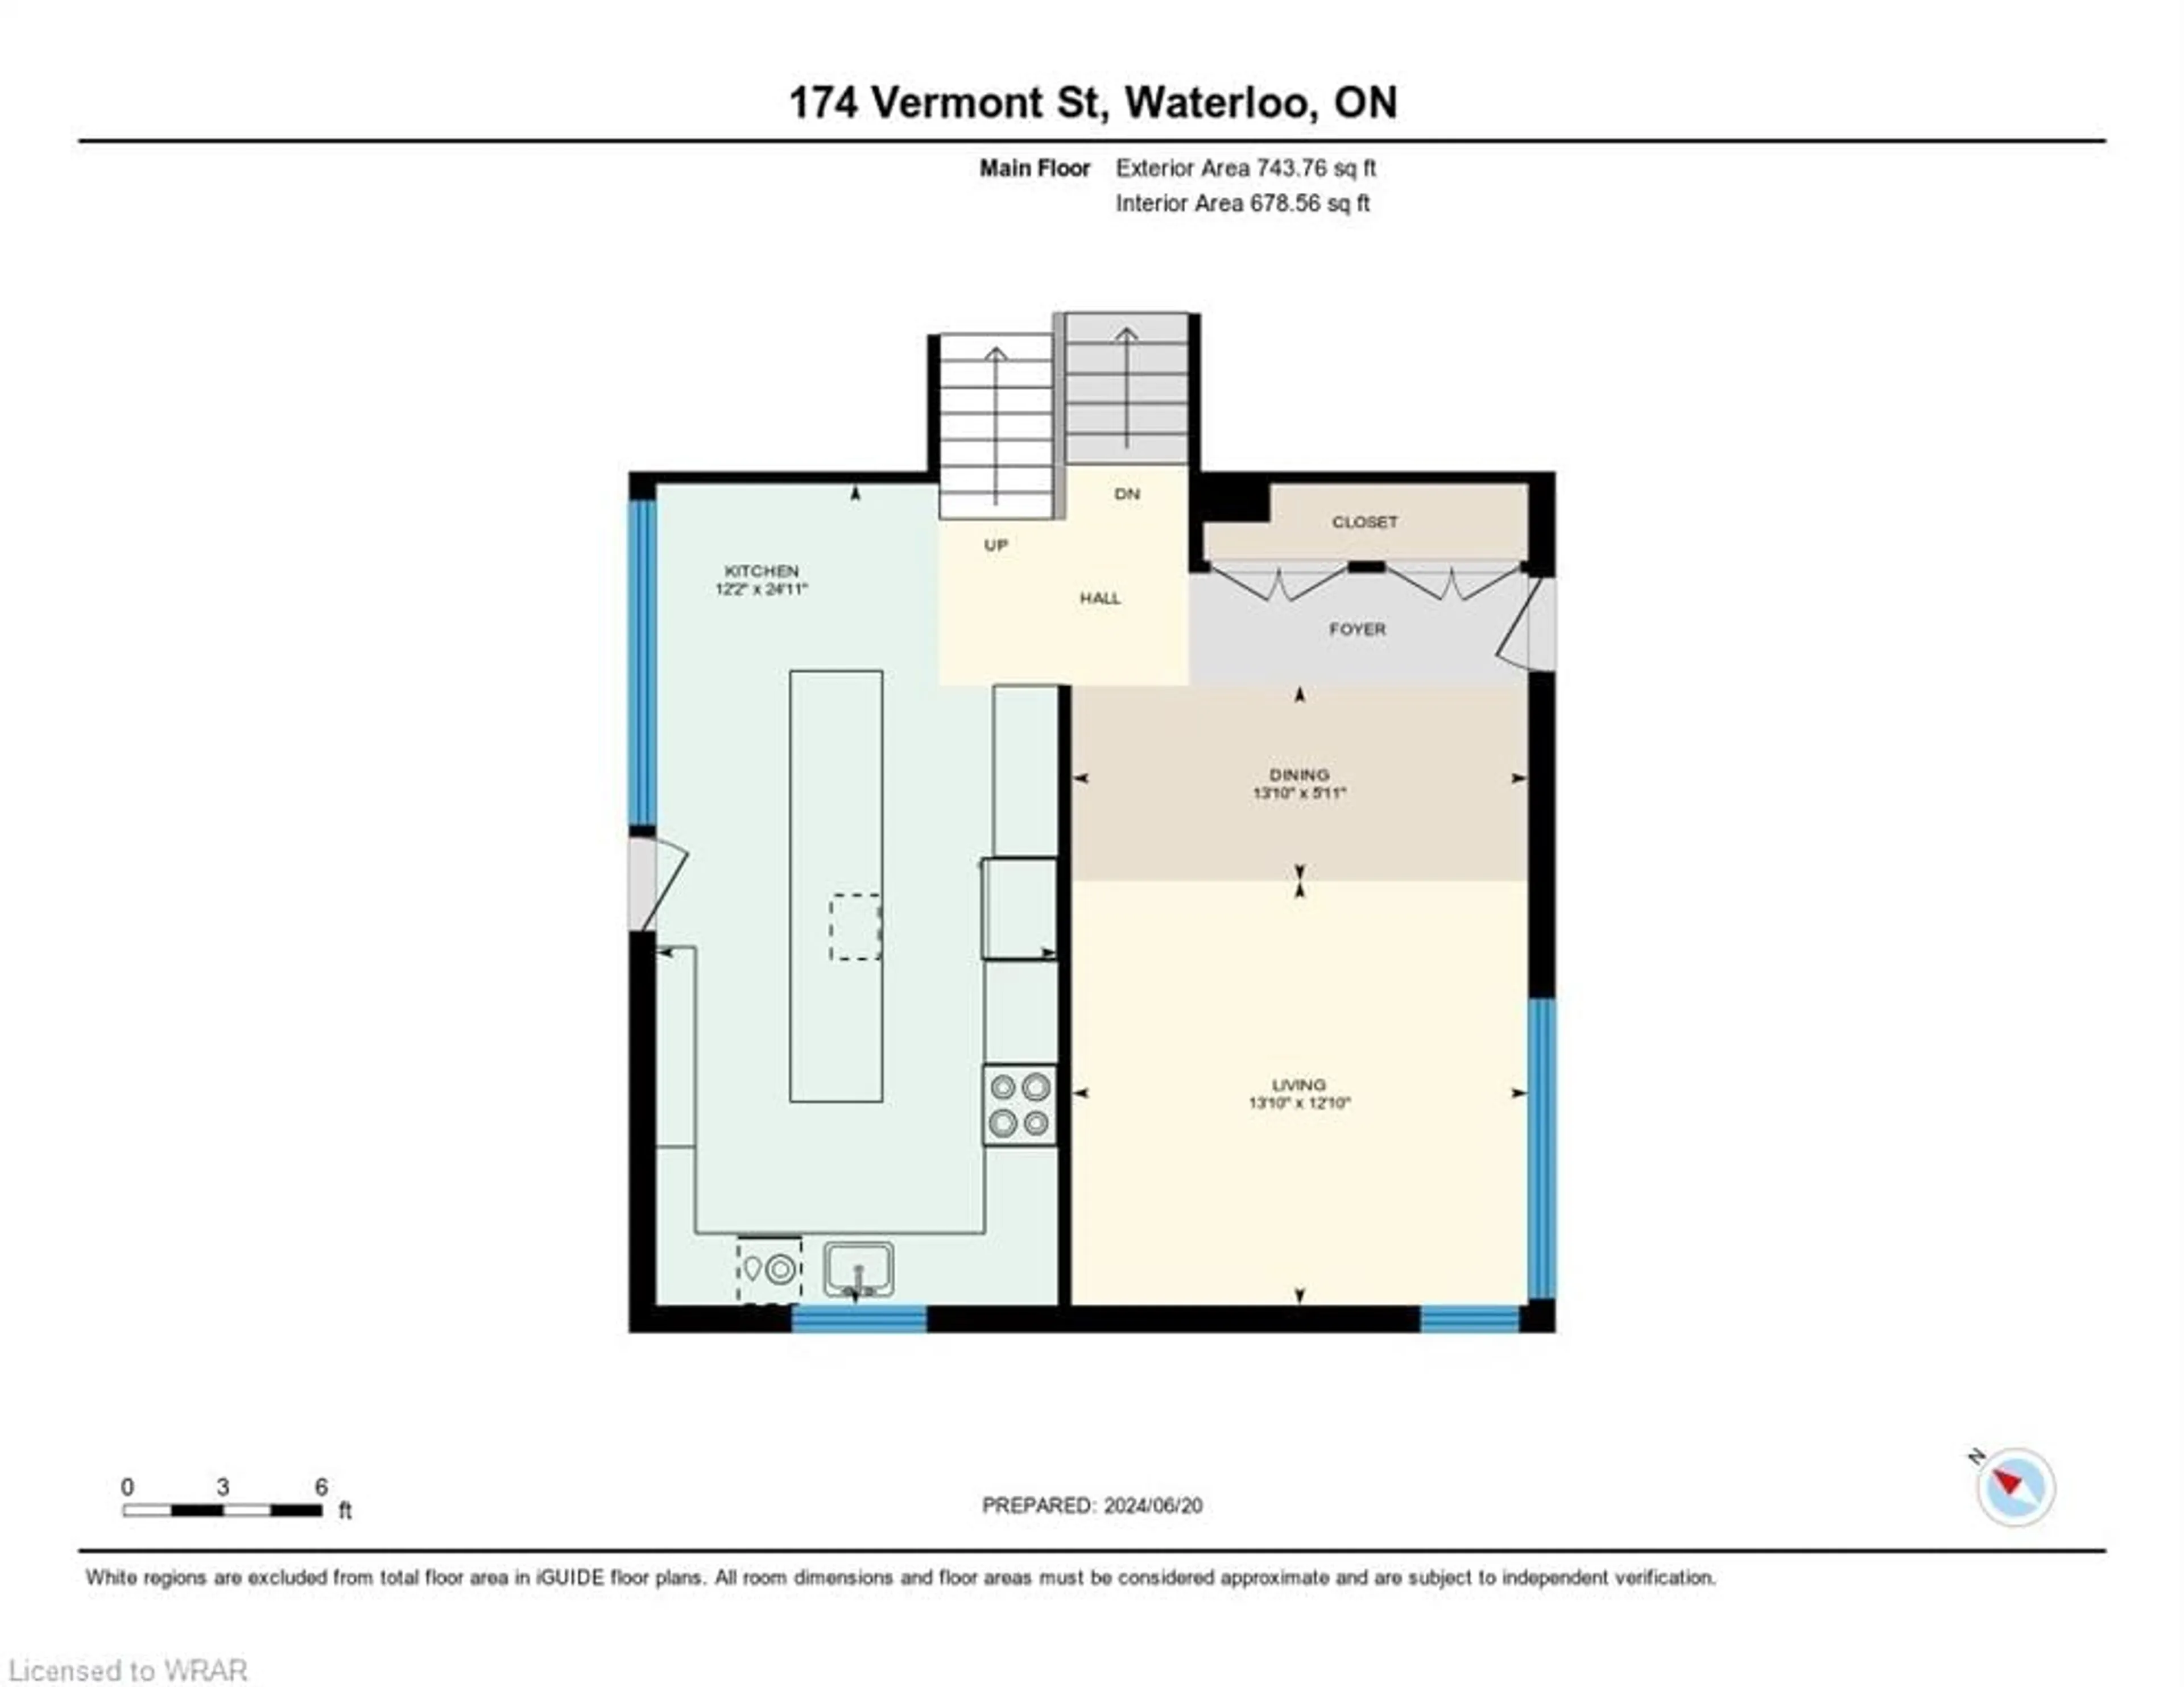 Floor plan for 174 Vermont St, Waterloo Ontario N2J 2M8